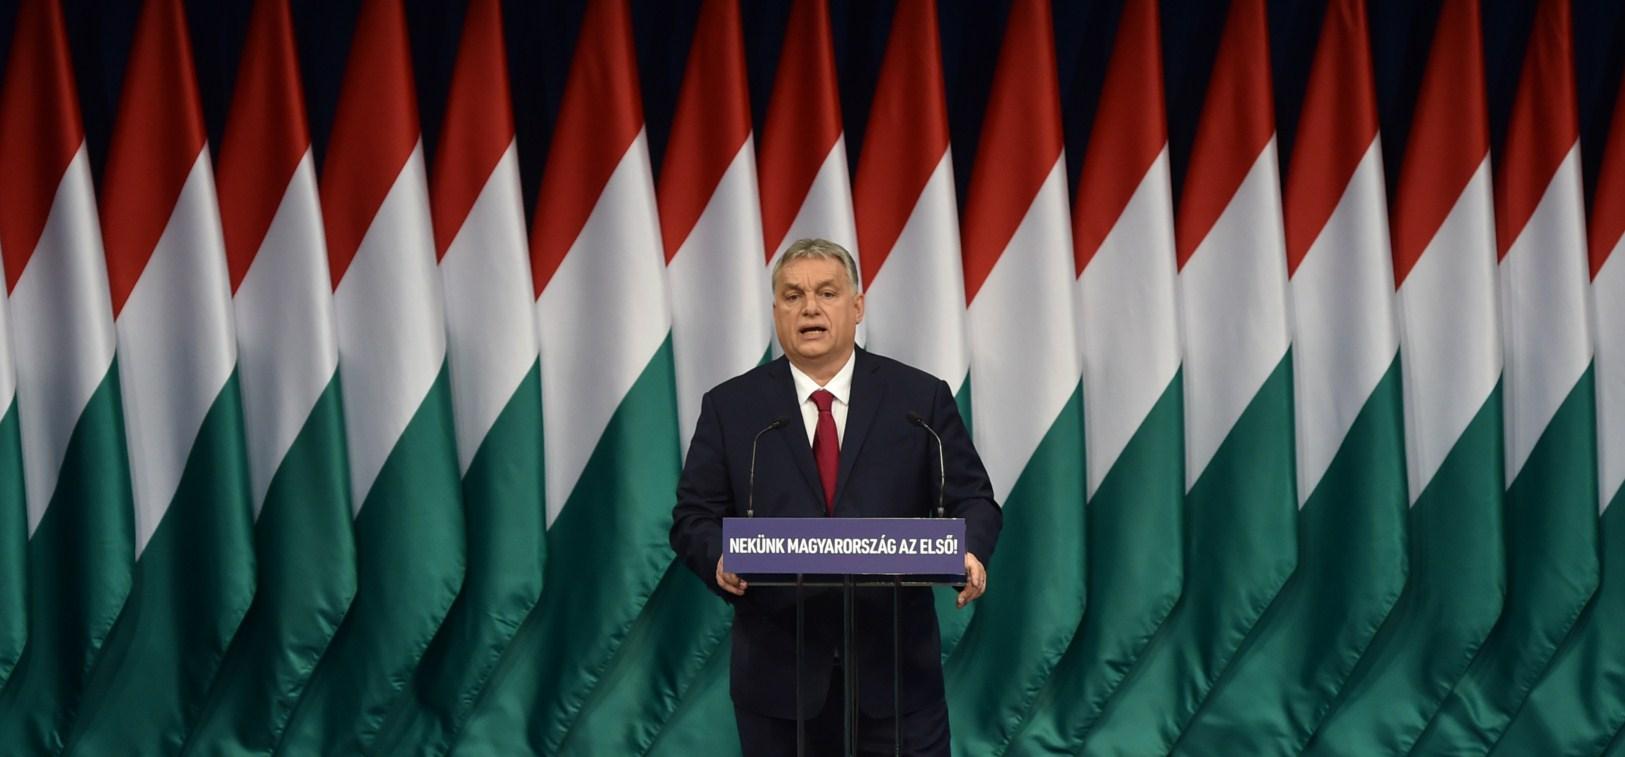 Orban pozvan u EU parlament zbog vanrednog stanja koje je uveo u Mađarskoj